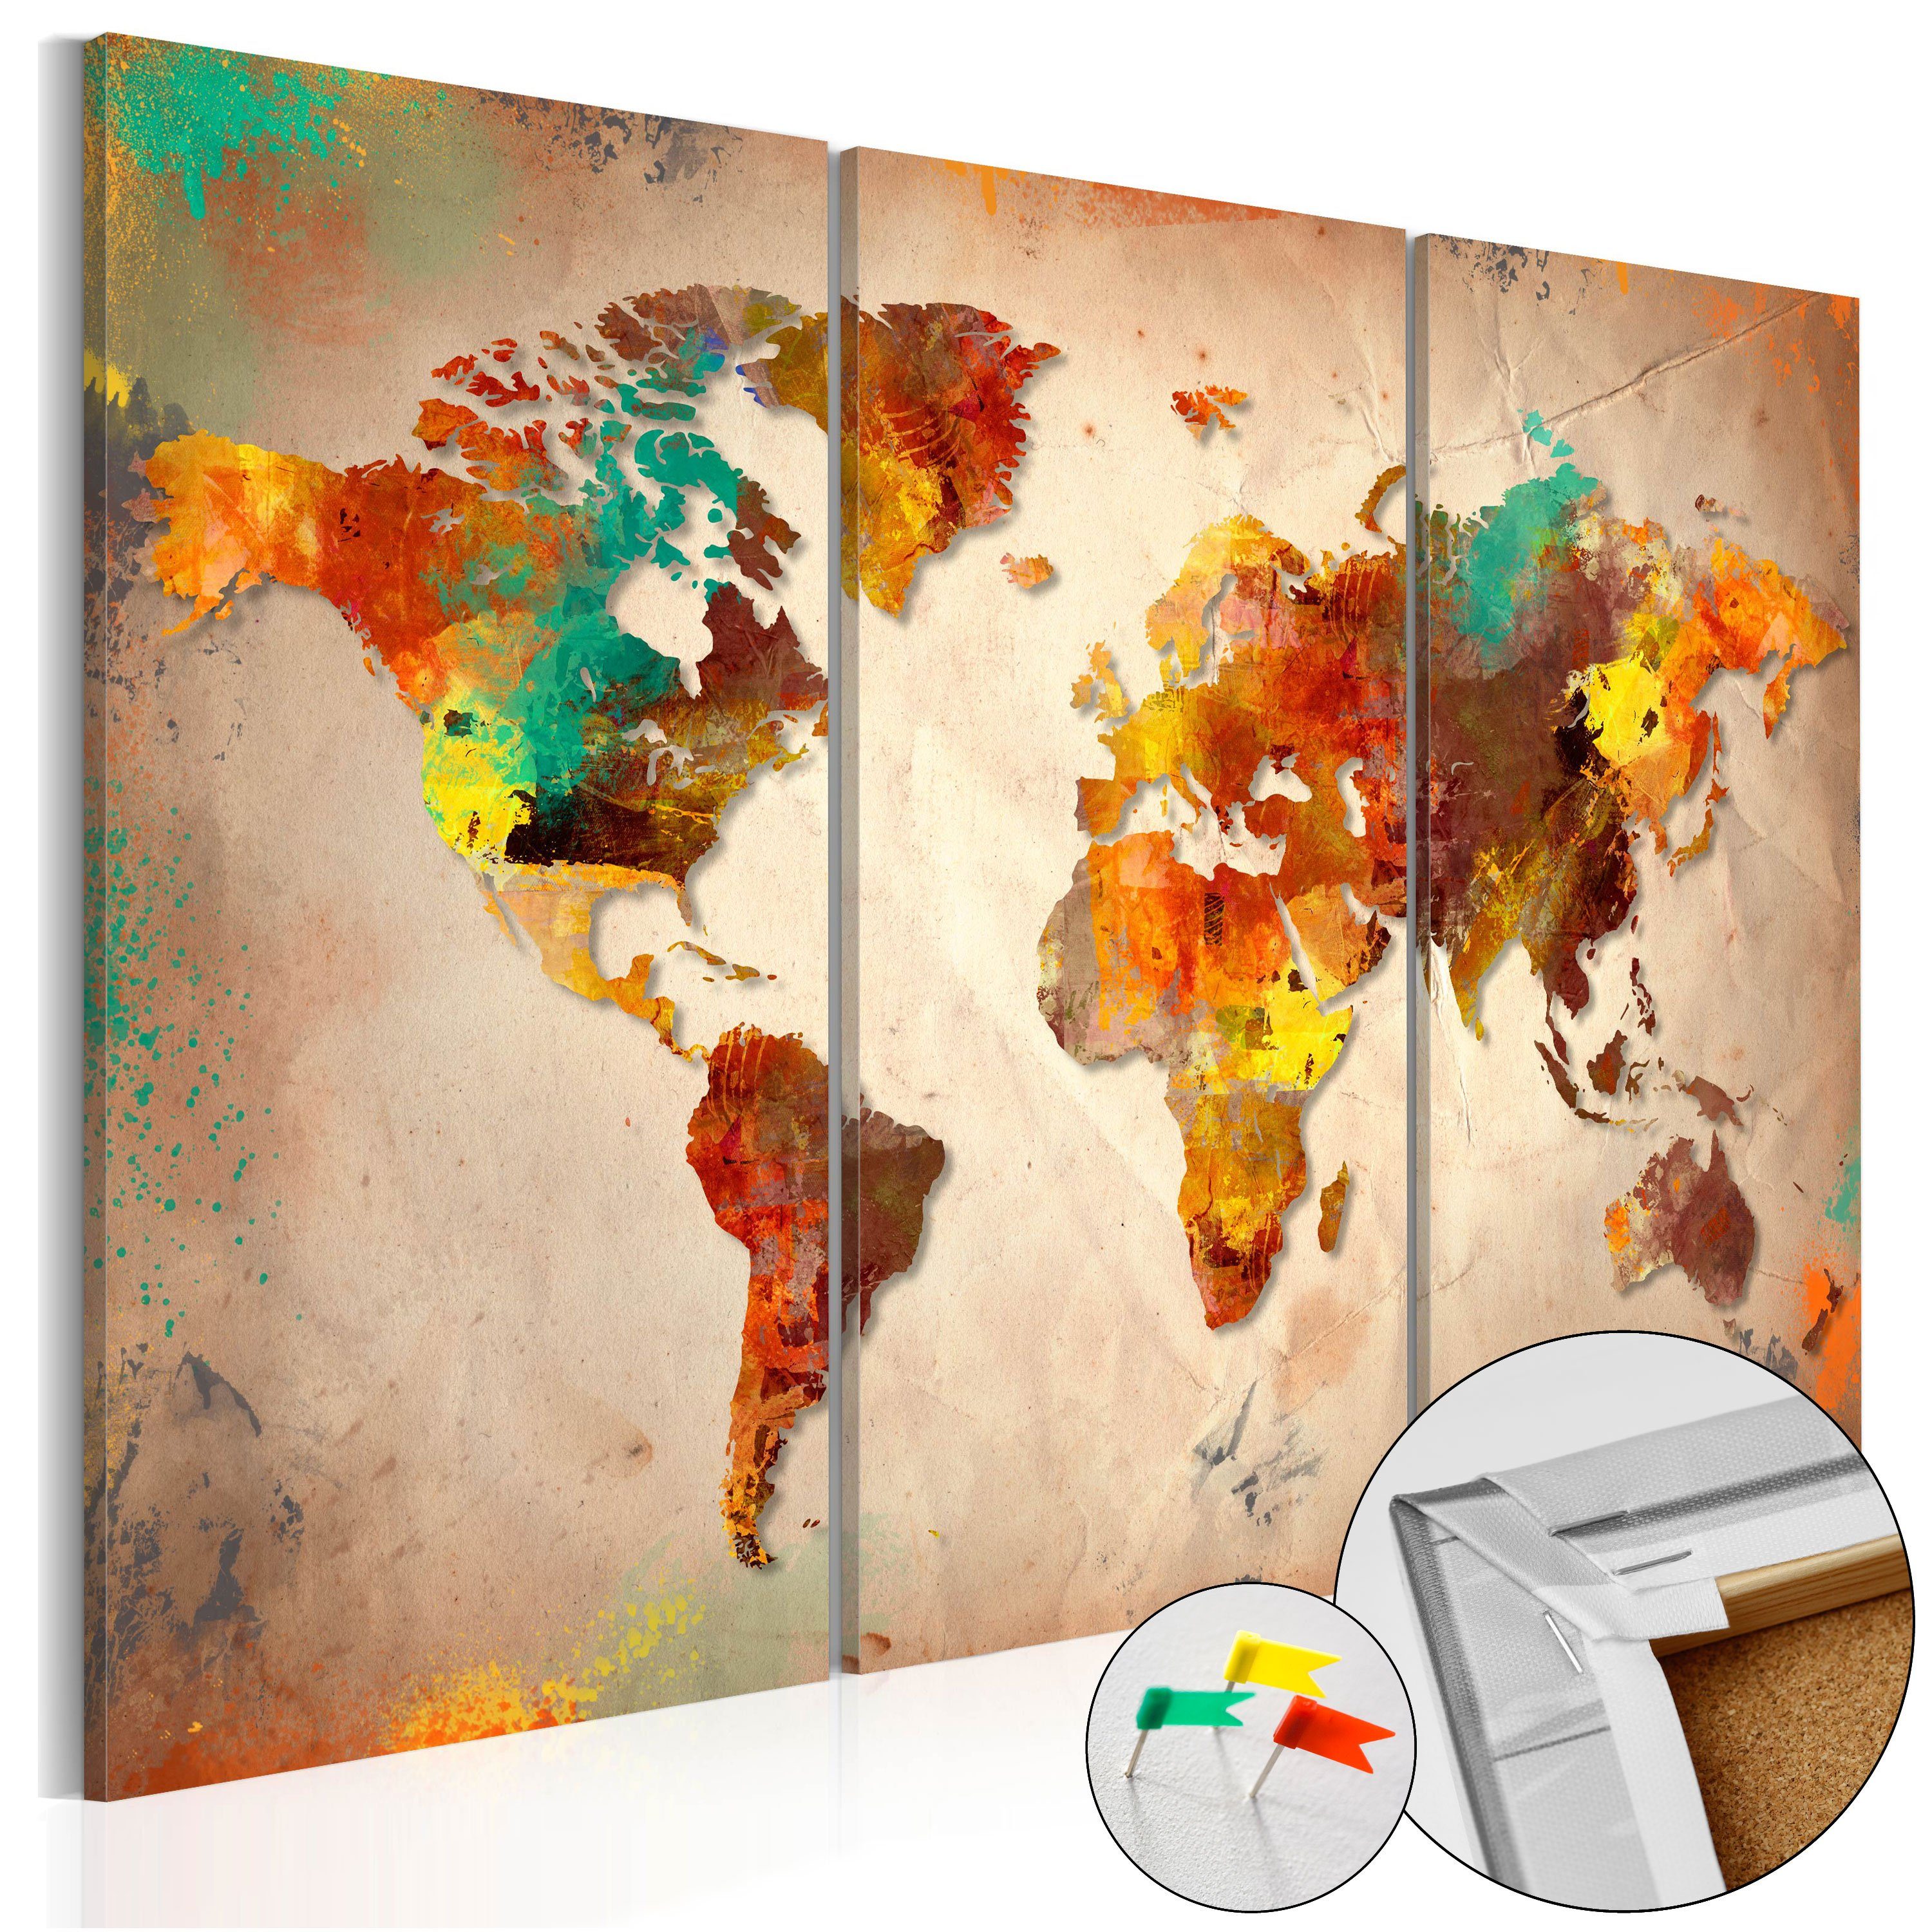 Painted Pinnwand Map] World Artgeist [Cork